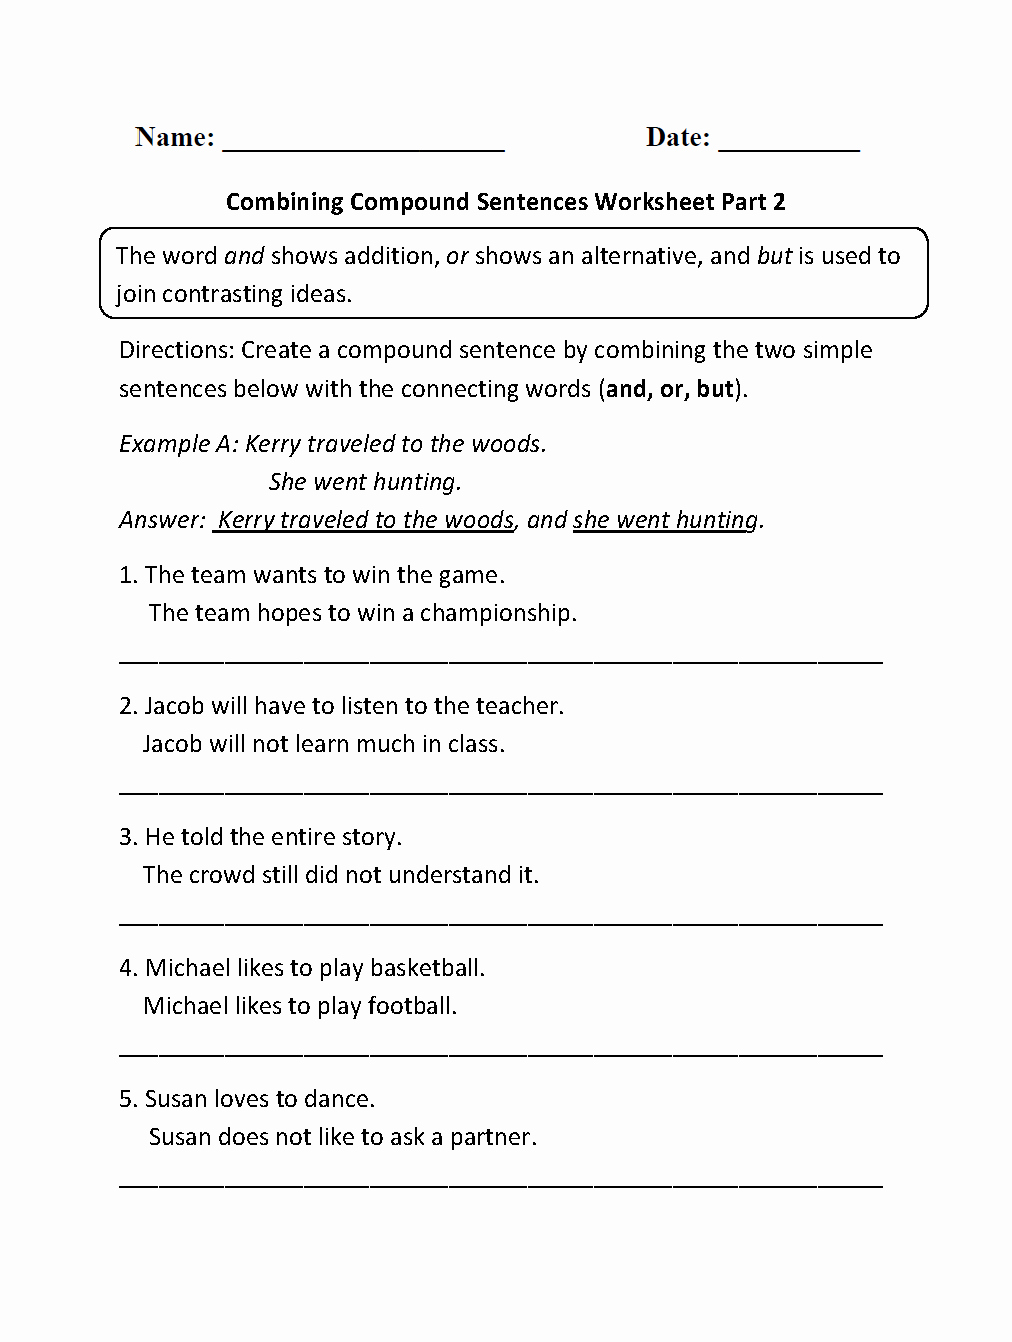 Compound Sentences Worksheet Pdf Best Of Bining Pound Sentences Worksheet Part 2